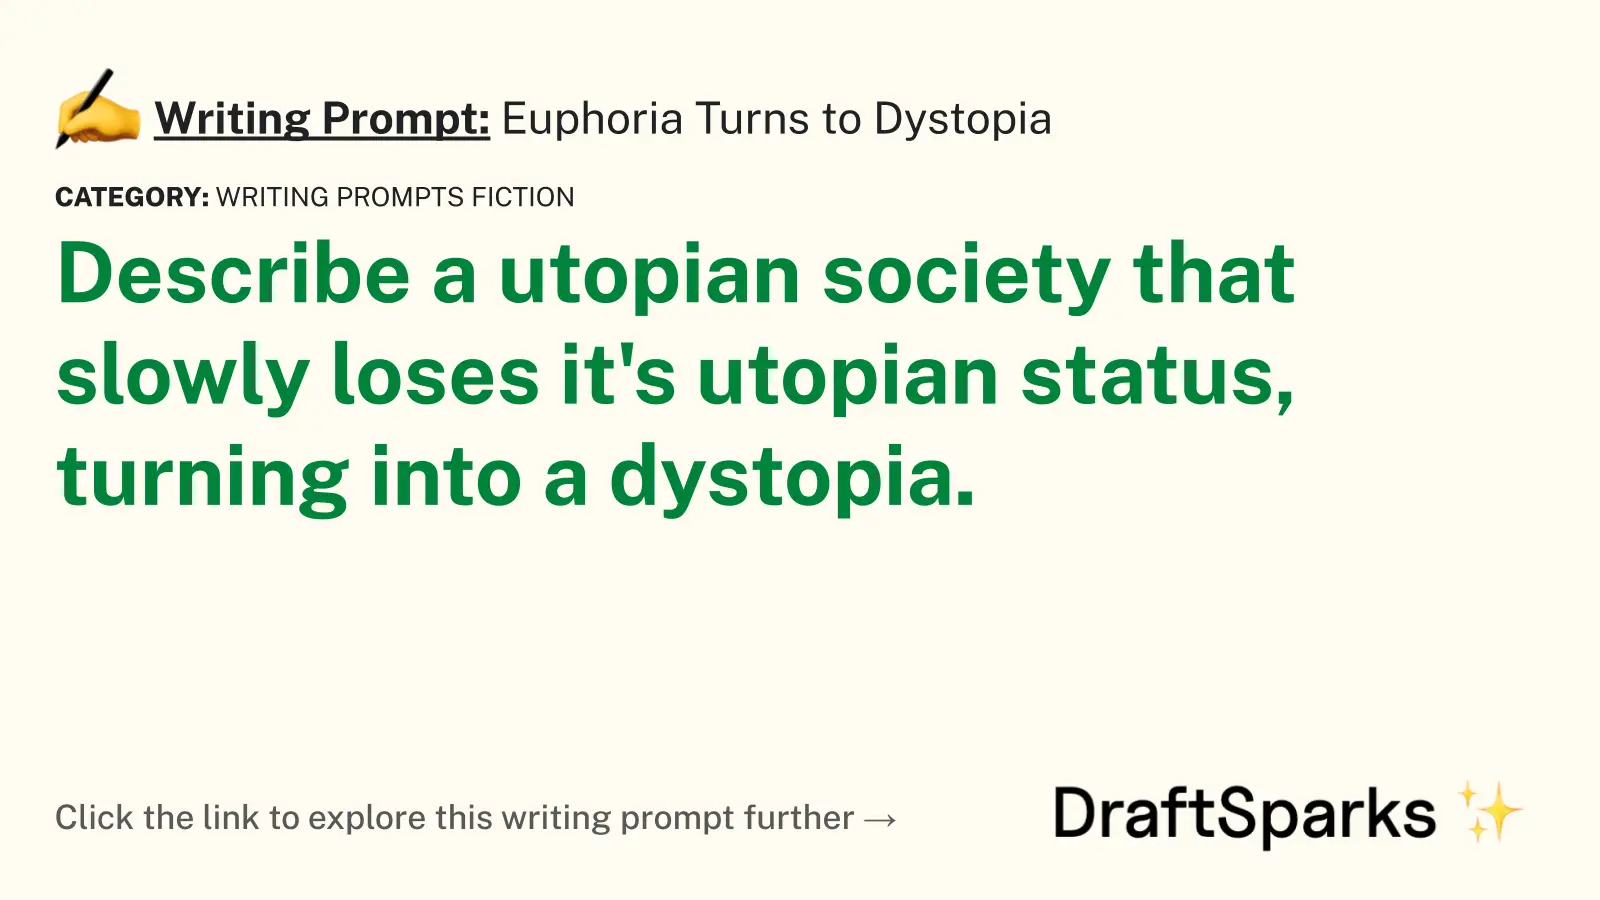 Euphoria Turns to Dystopia